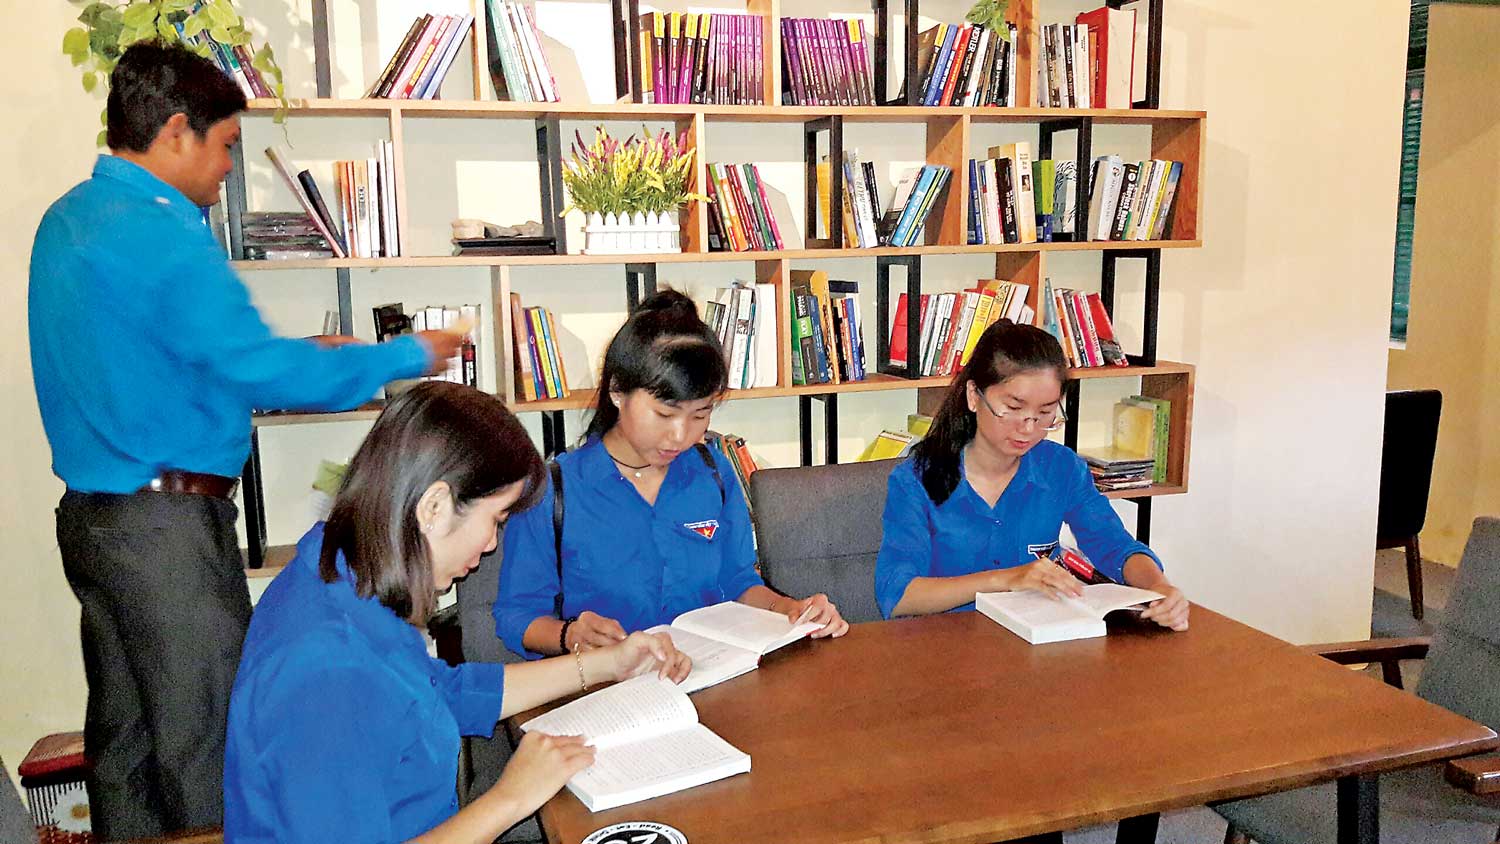 Một buổi tổng kết hoạt động Đoàn kết hợp phát động Ngày Sách Việt Nam của Huyện đoàn Cần Giuộc tại quán cà phê Sách thu hút nhiều đoàn viên, thanh niên tham gia. Hoạt động này được thông báo rộng rãi trên mạng xã hội (Ảnh do đơn vị cung cấp)